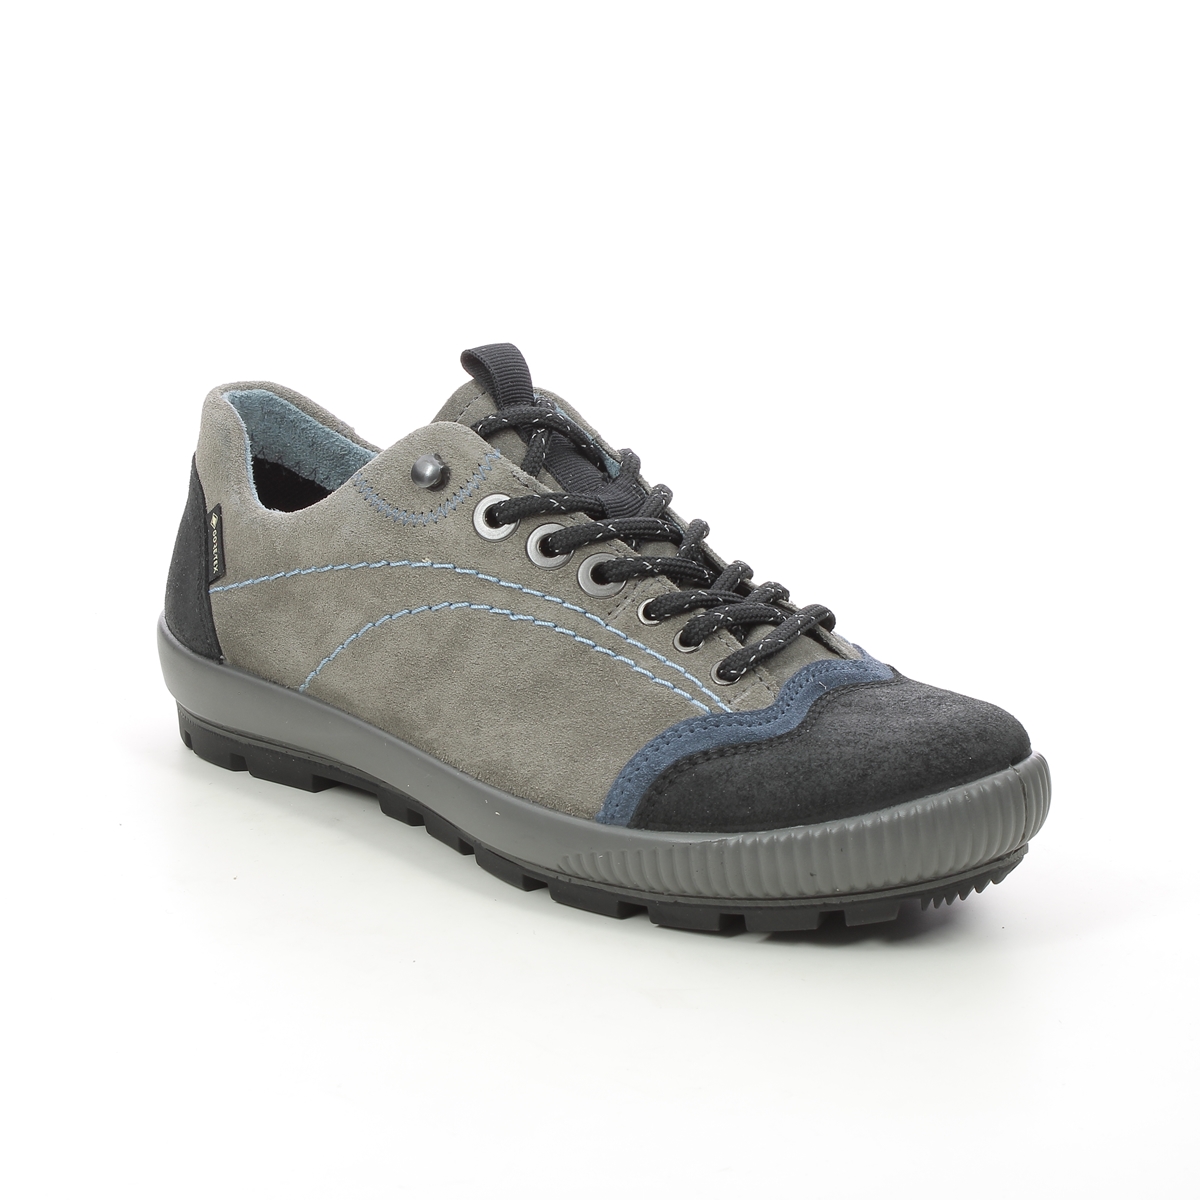 Legero Tanaro Trek Gtx Grey Suede Womens Walking Shoes 2000122-2800 in a Plain Leather in Size 6